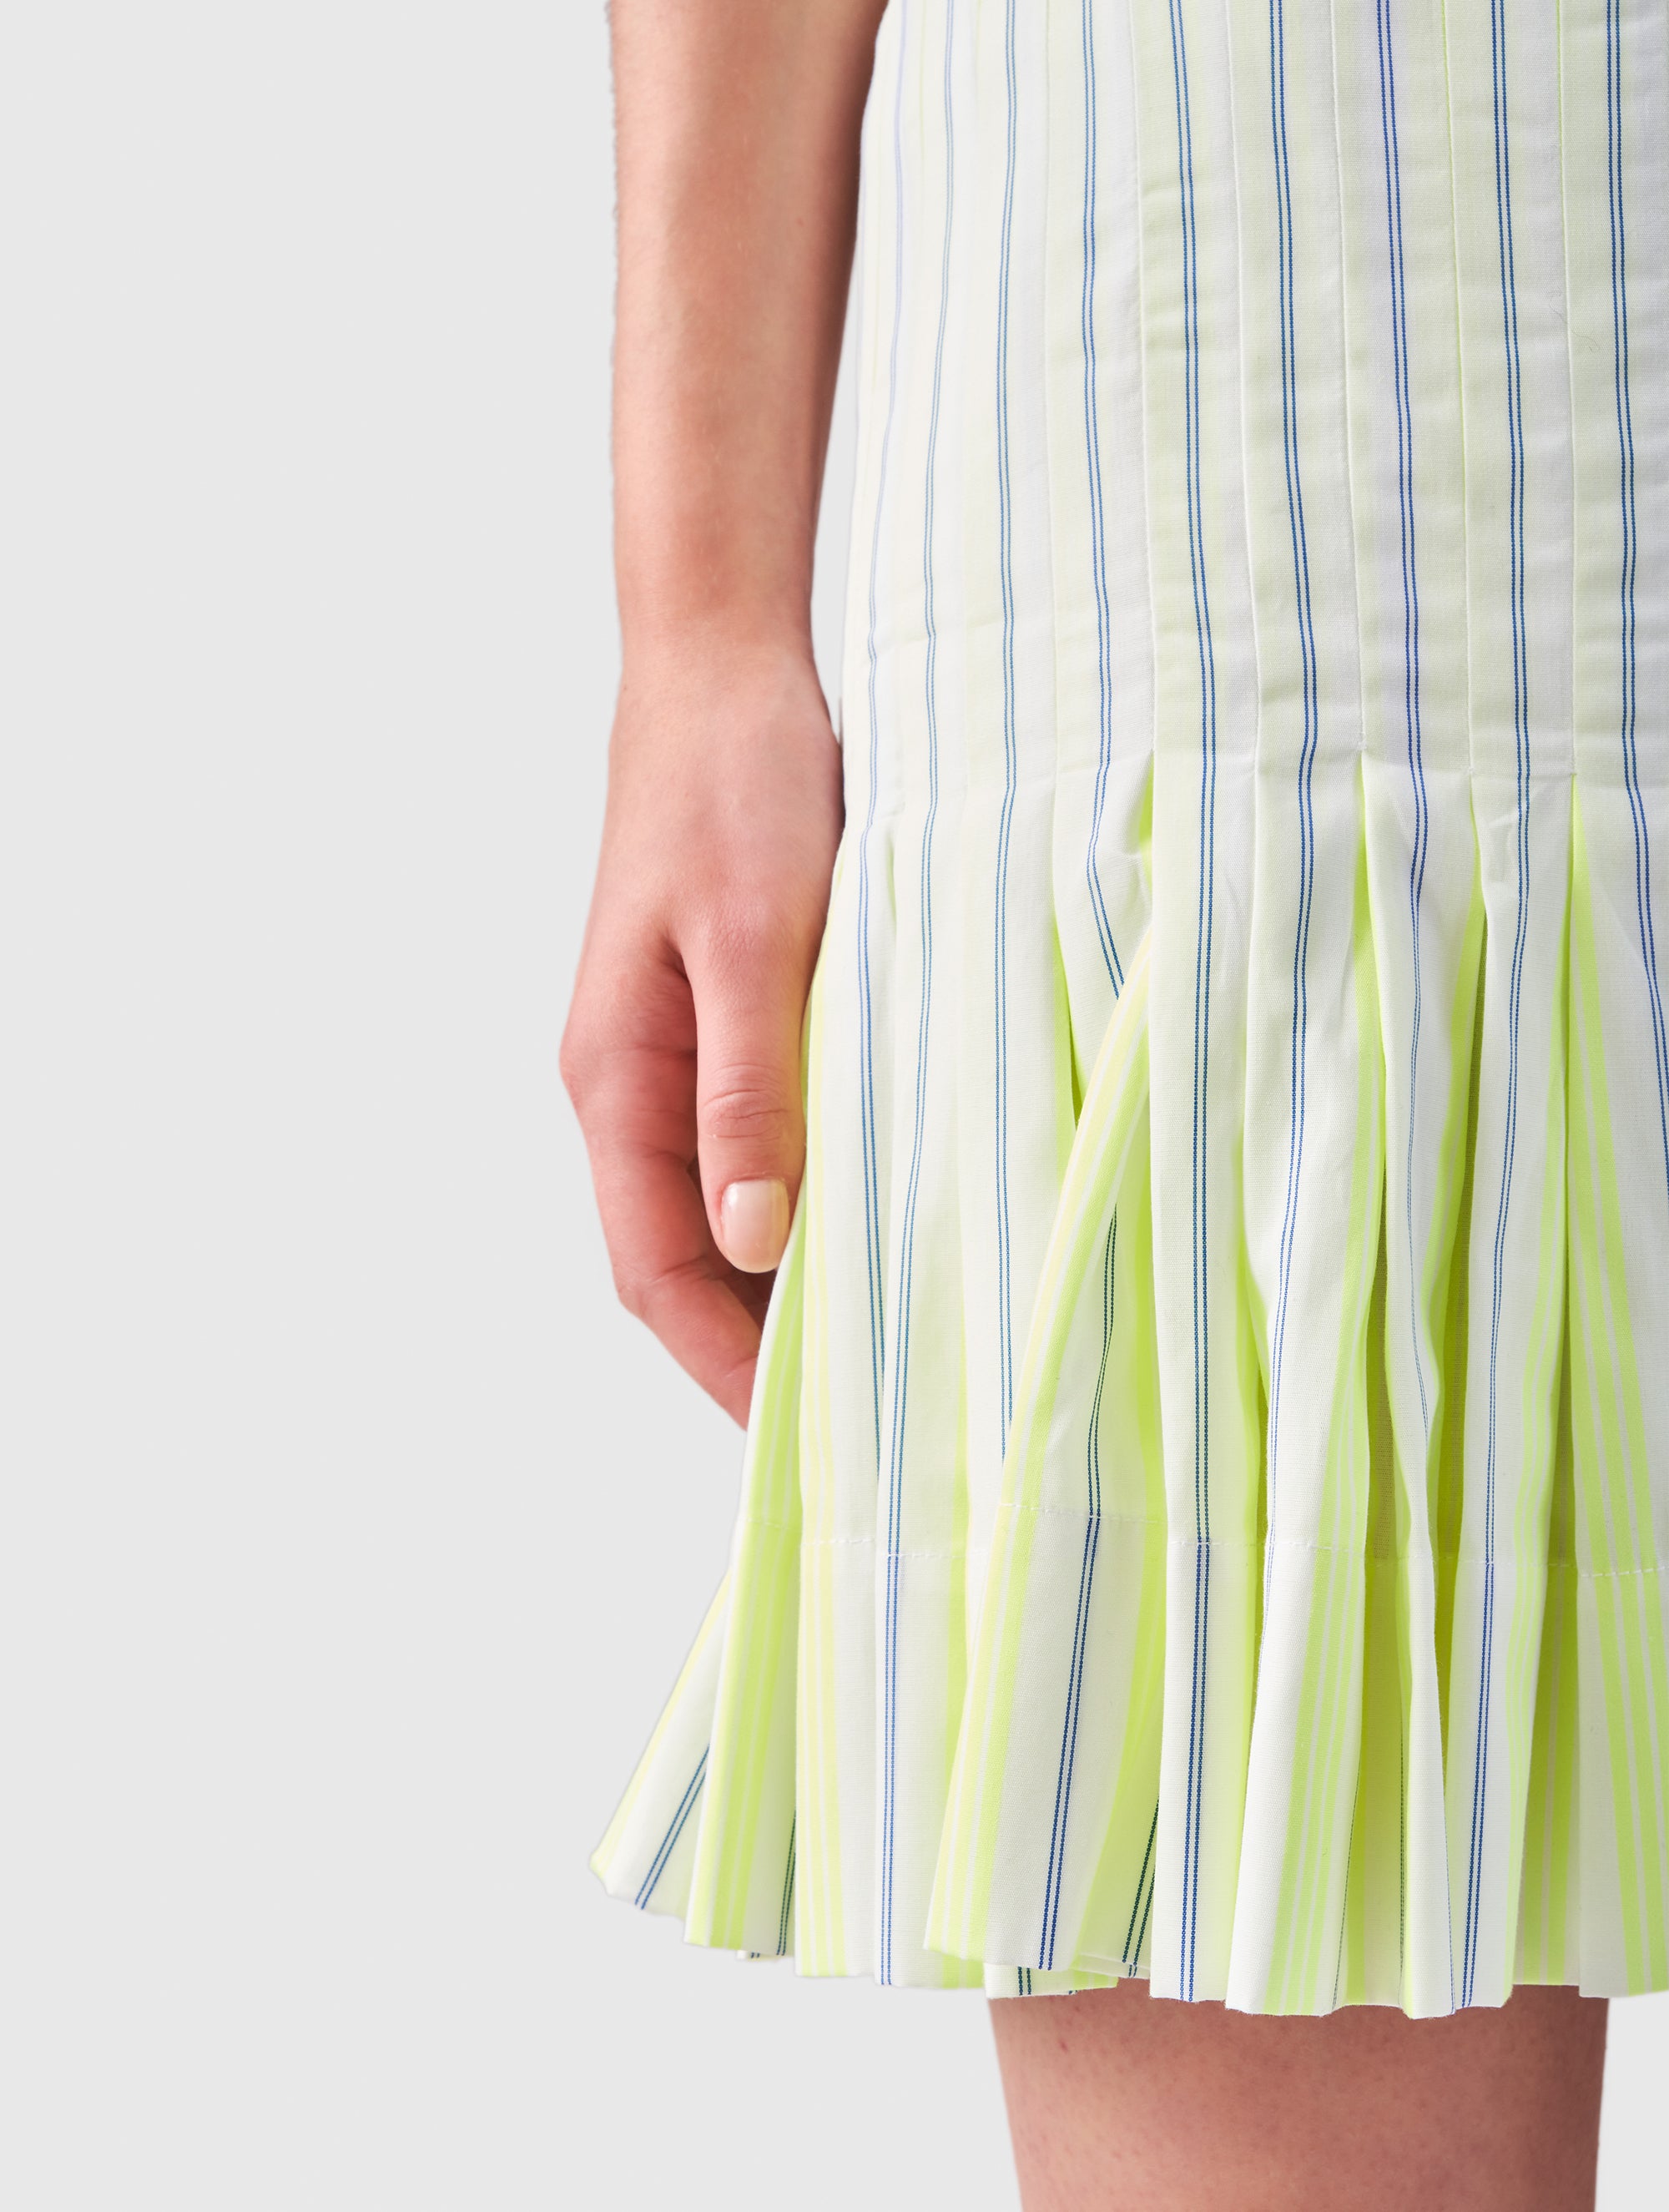 Gestreifter Minirock mit einem eleganten Gürtel aus in Falten gelegter Baumwolle besticht durch seinen vielseitig kombinierbaren Look